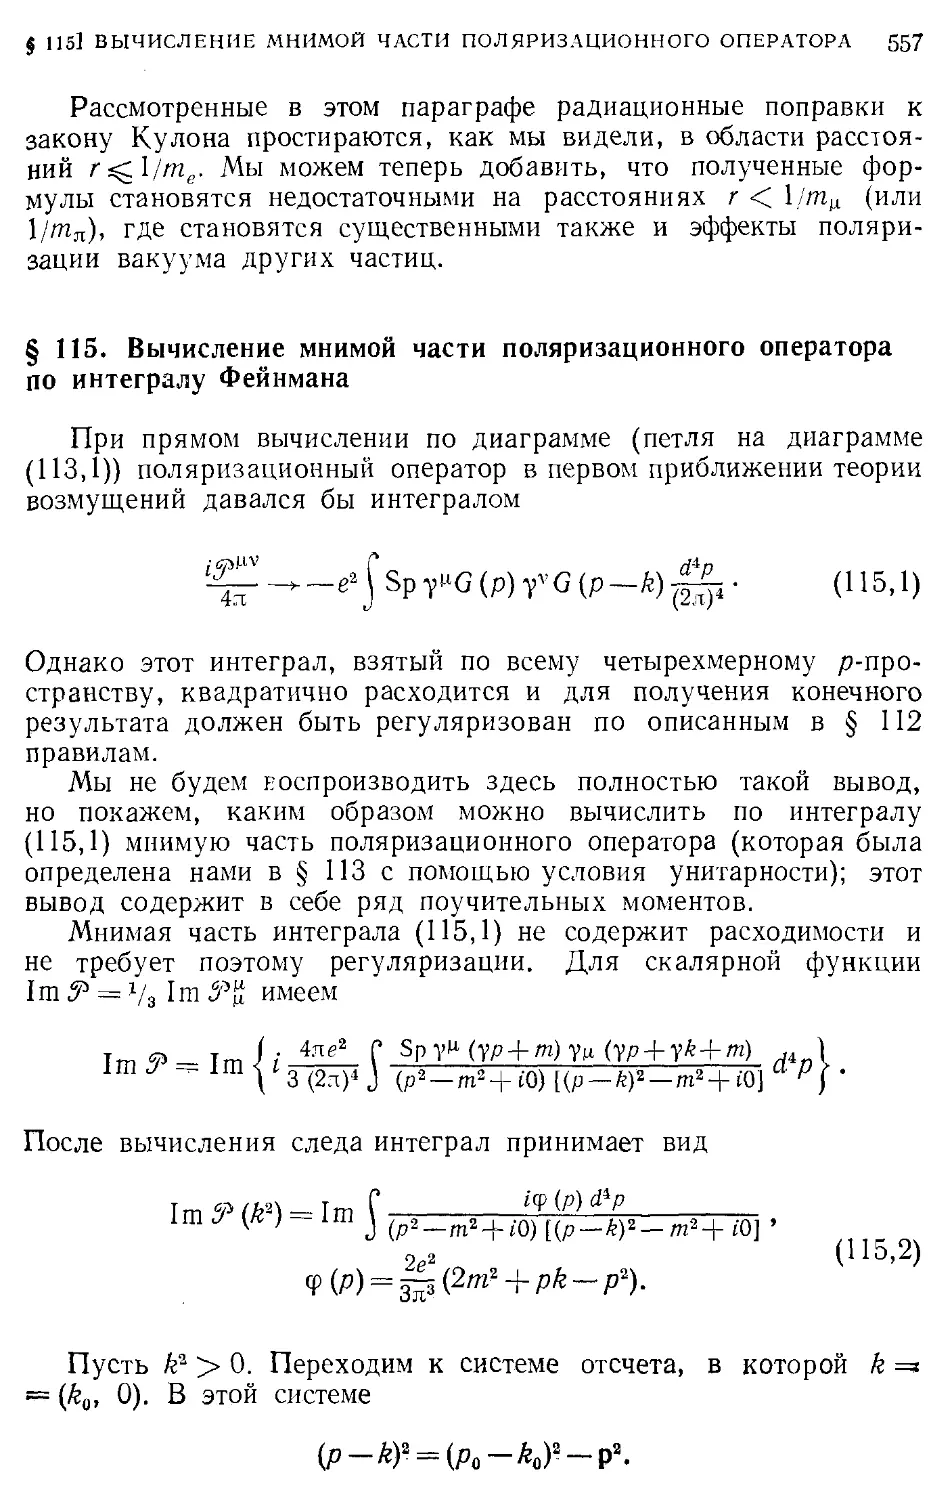 § 115. Вычисление мнимой части поляризационного оператора по интегралу Фейнмана